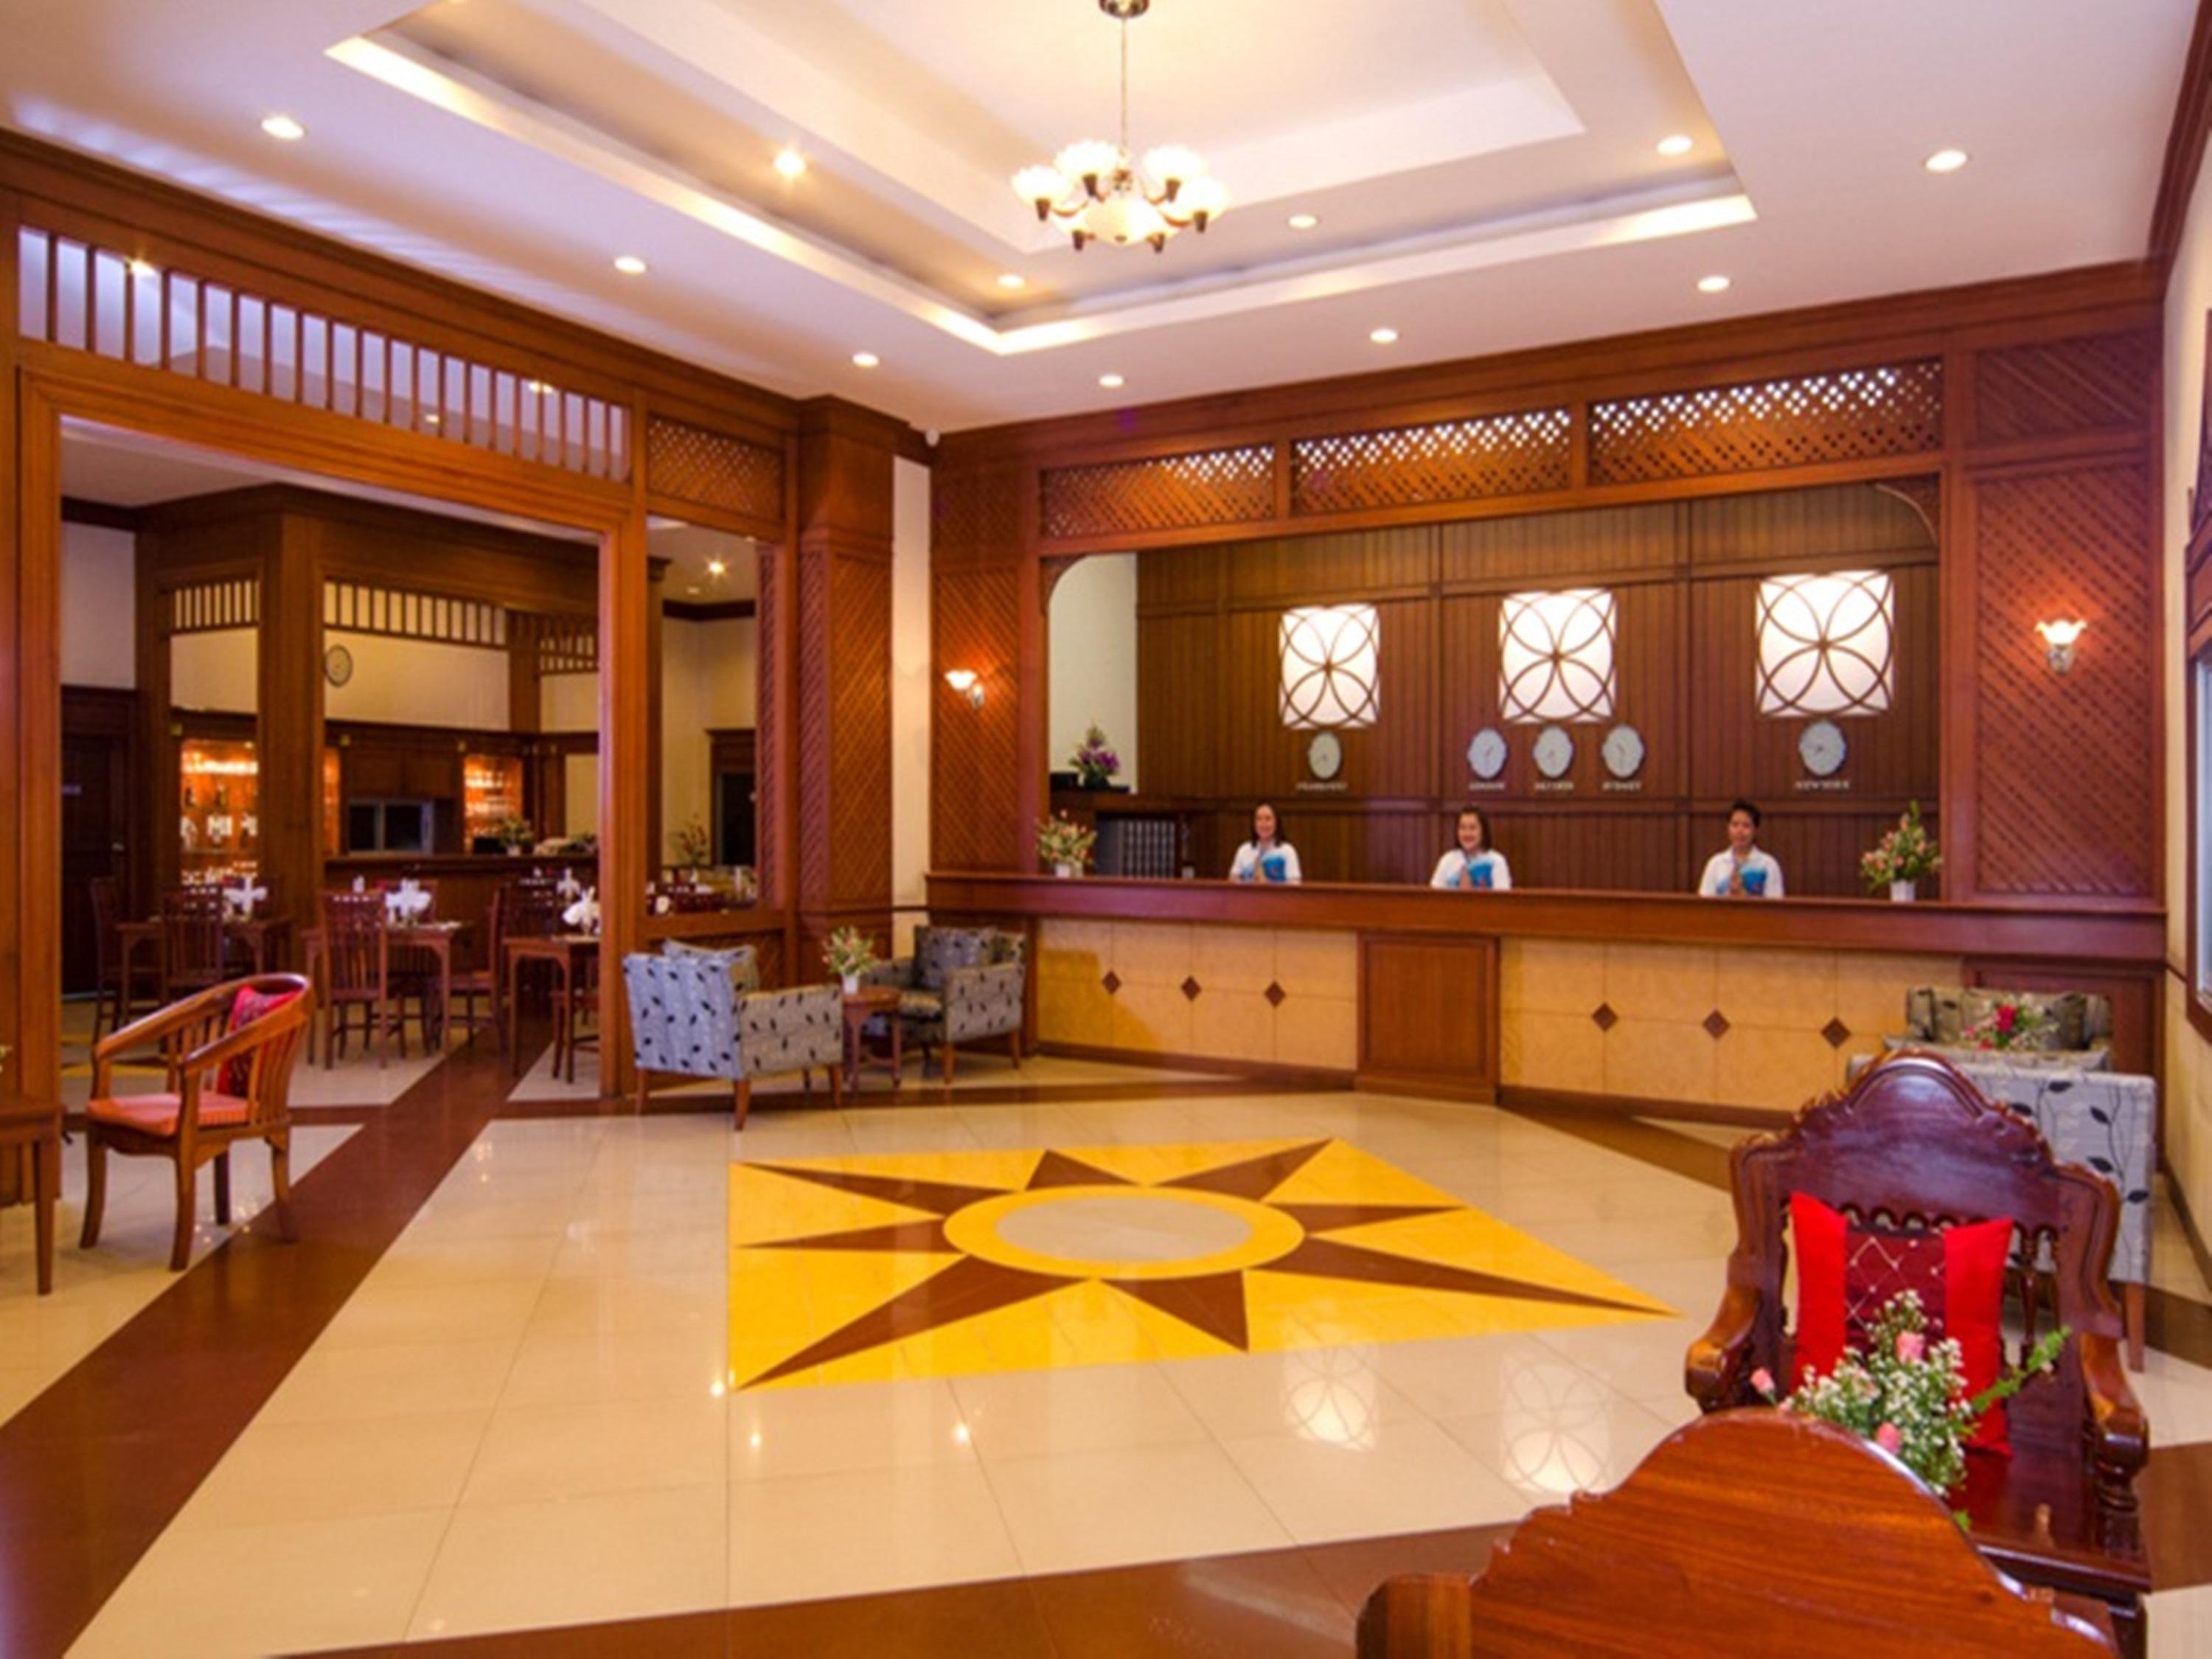 Eastiny Seven Hotel Pattaya Zewnętrze zdjęcie